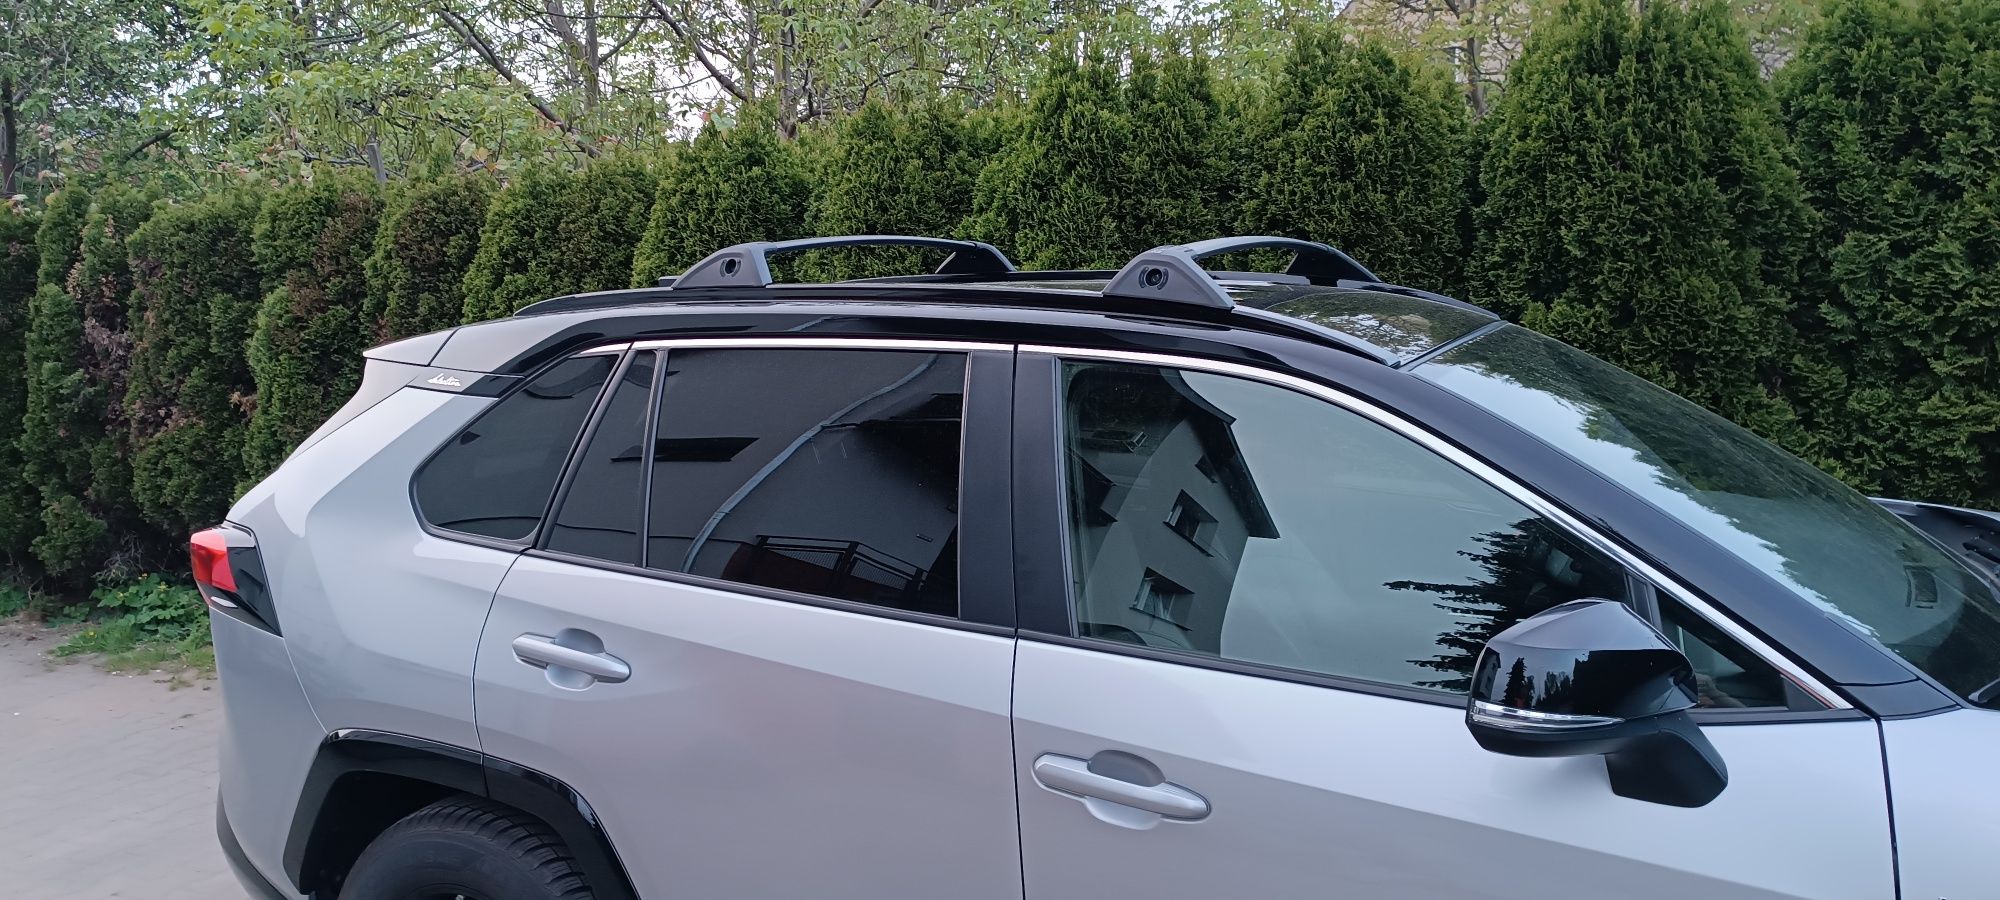 Toyota RAV4 2019 bagažnik dachowy belki poprzeczne idealnie pasują